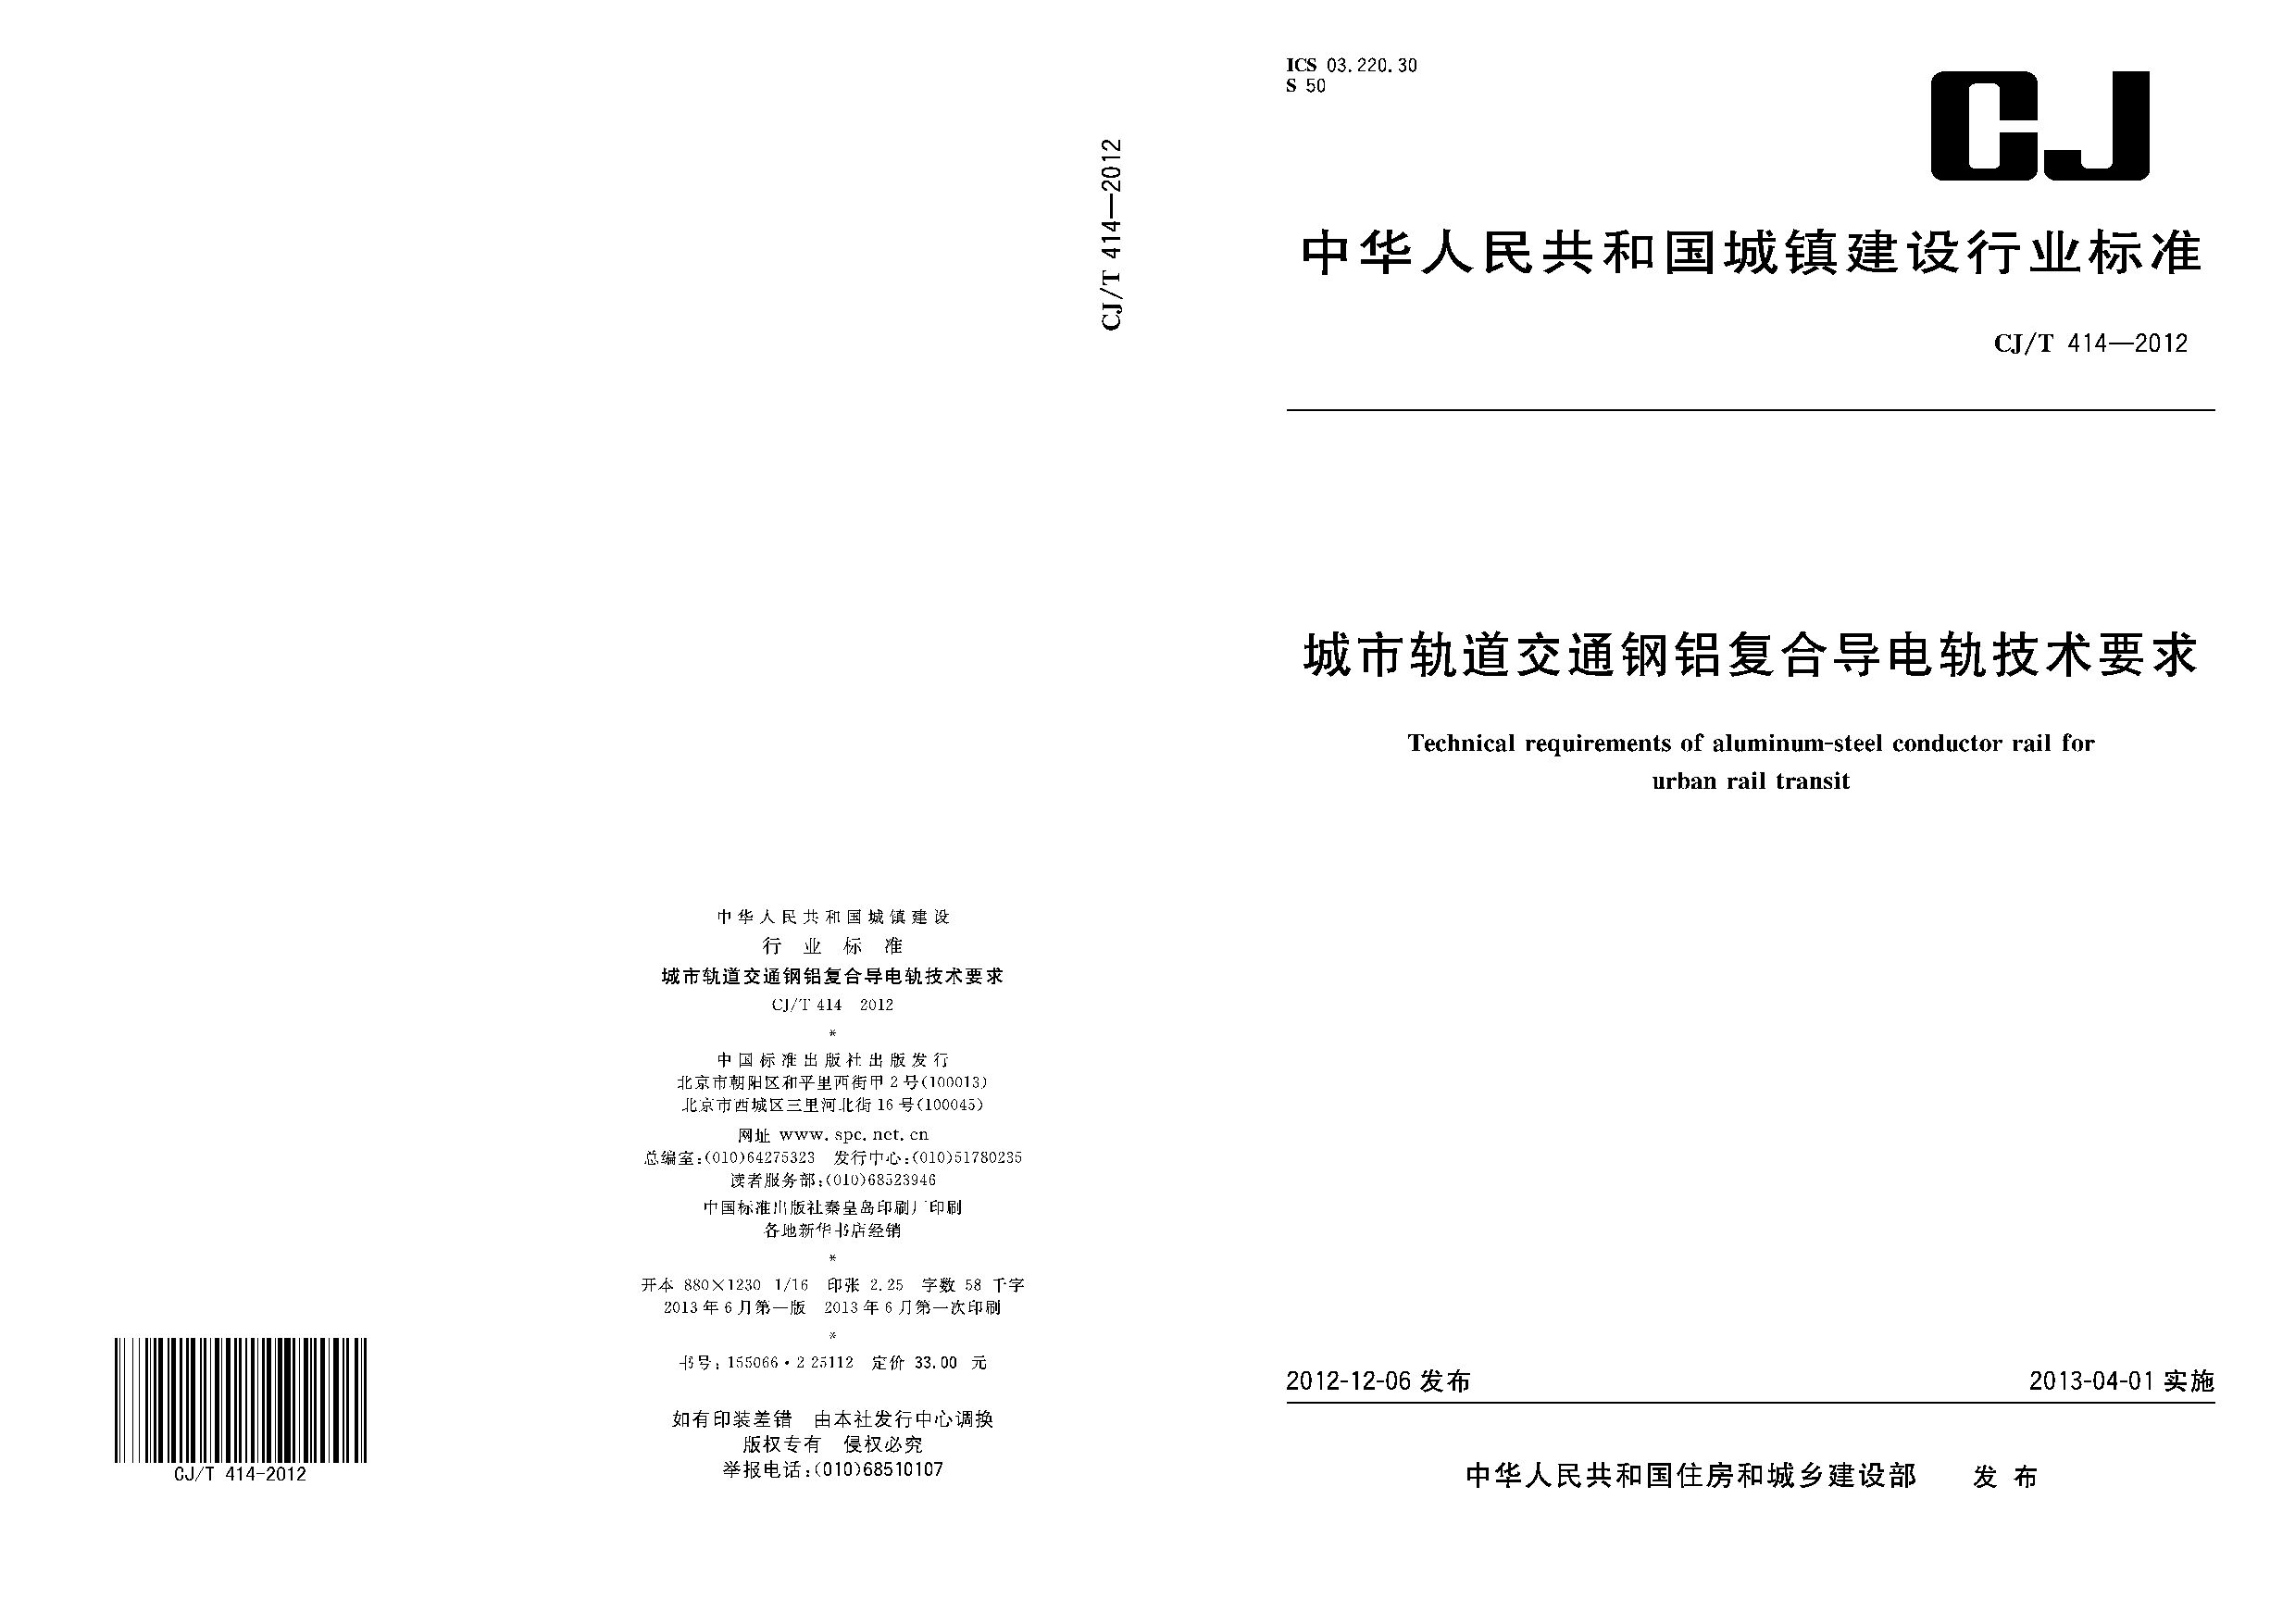 CJ/T 414-2012封面图